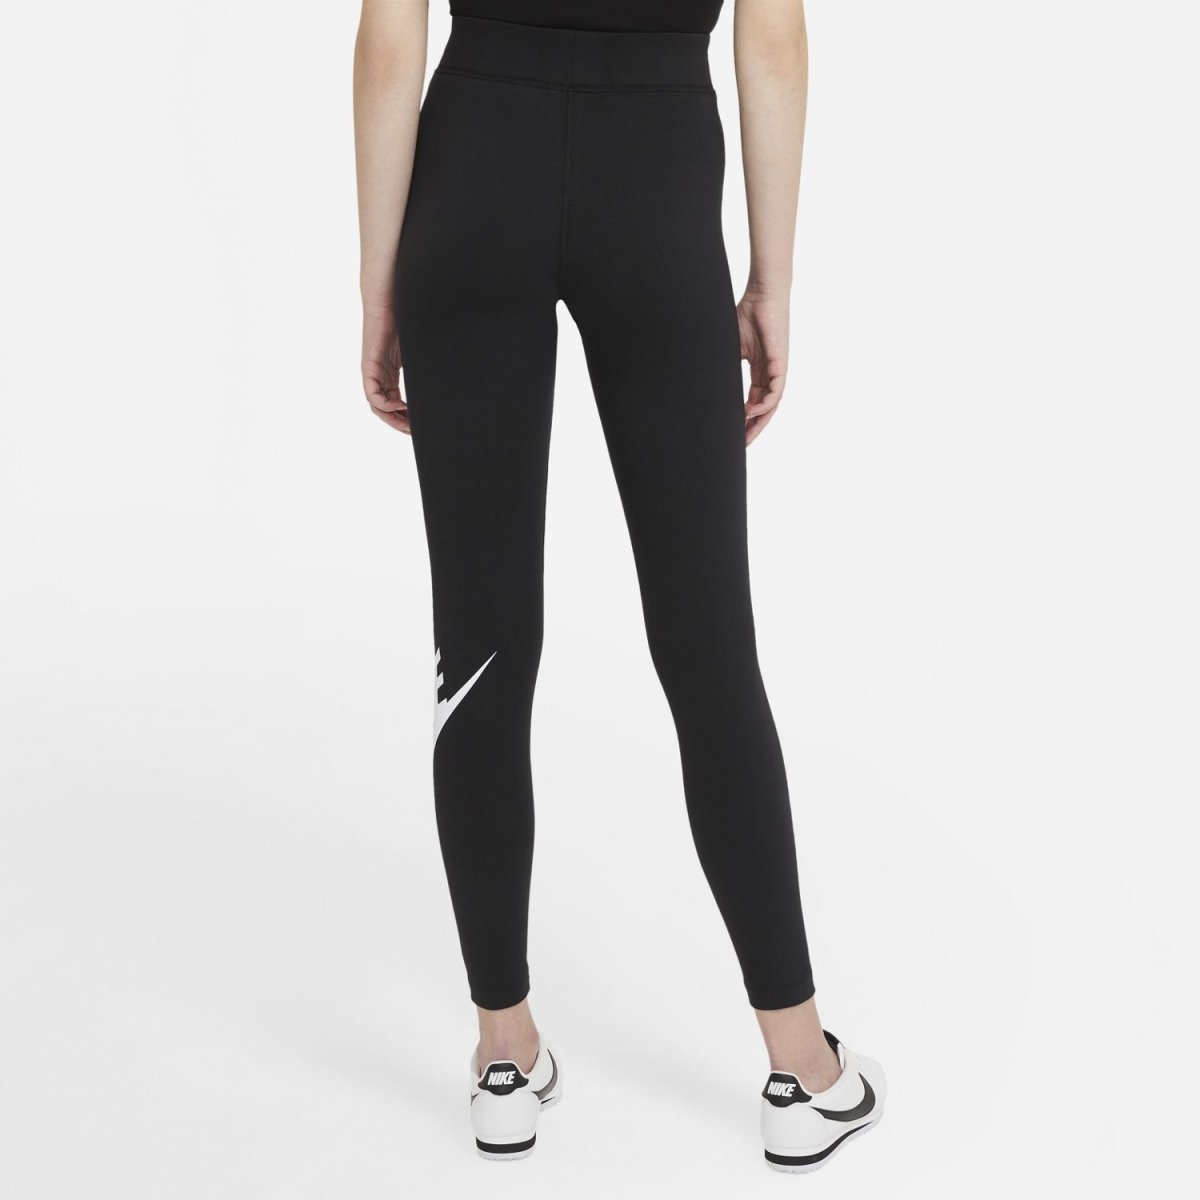 https://stndrdnola.com/cdn/shop/products/nike-womens-sportswear-essential-high-waisted-leggings-cz8528-010-390431.jpg?v=1635826839